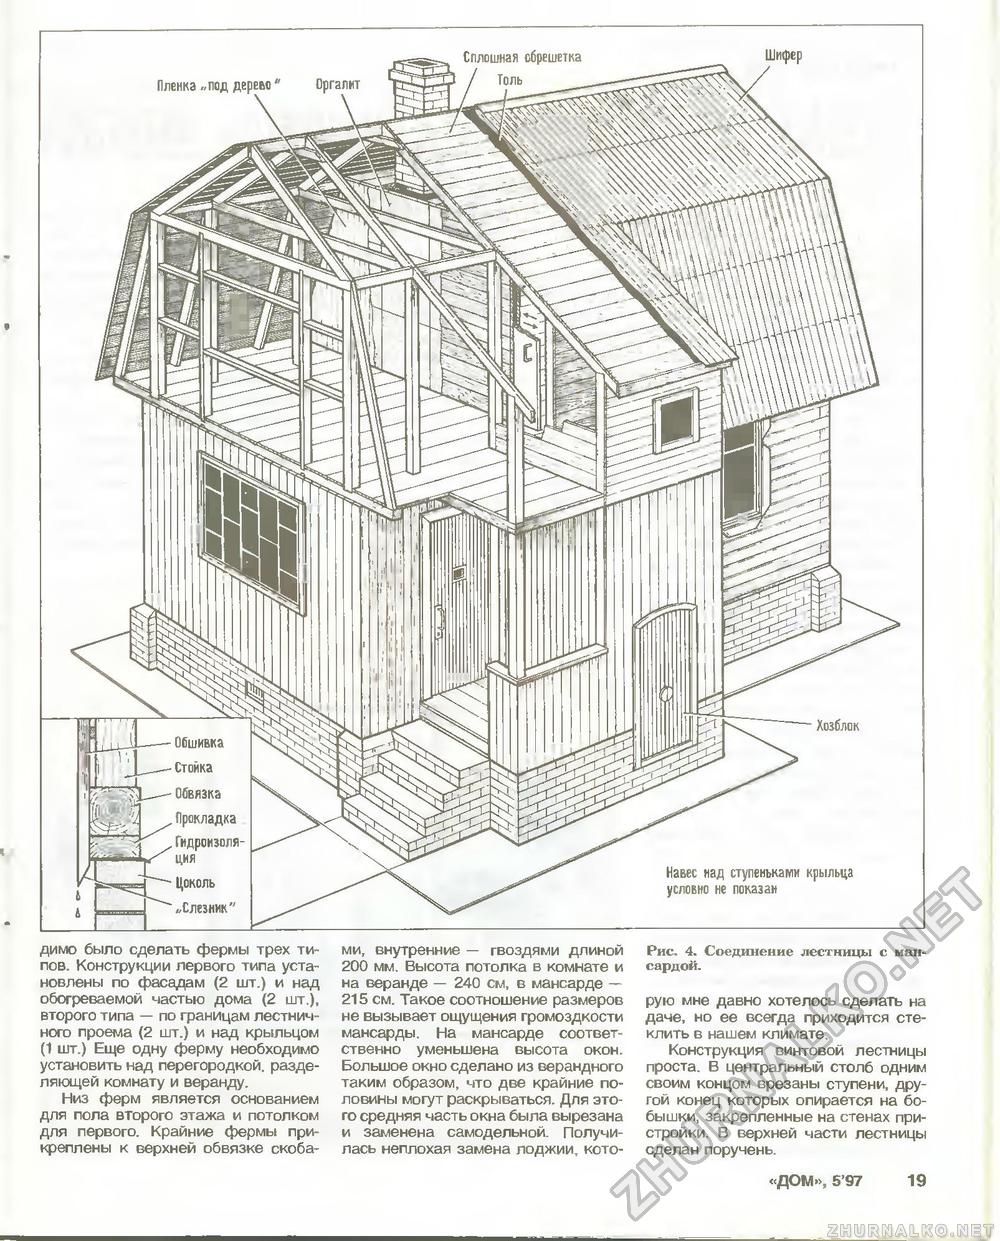 Дом 1997-05, страница 19